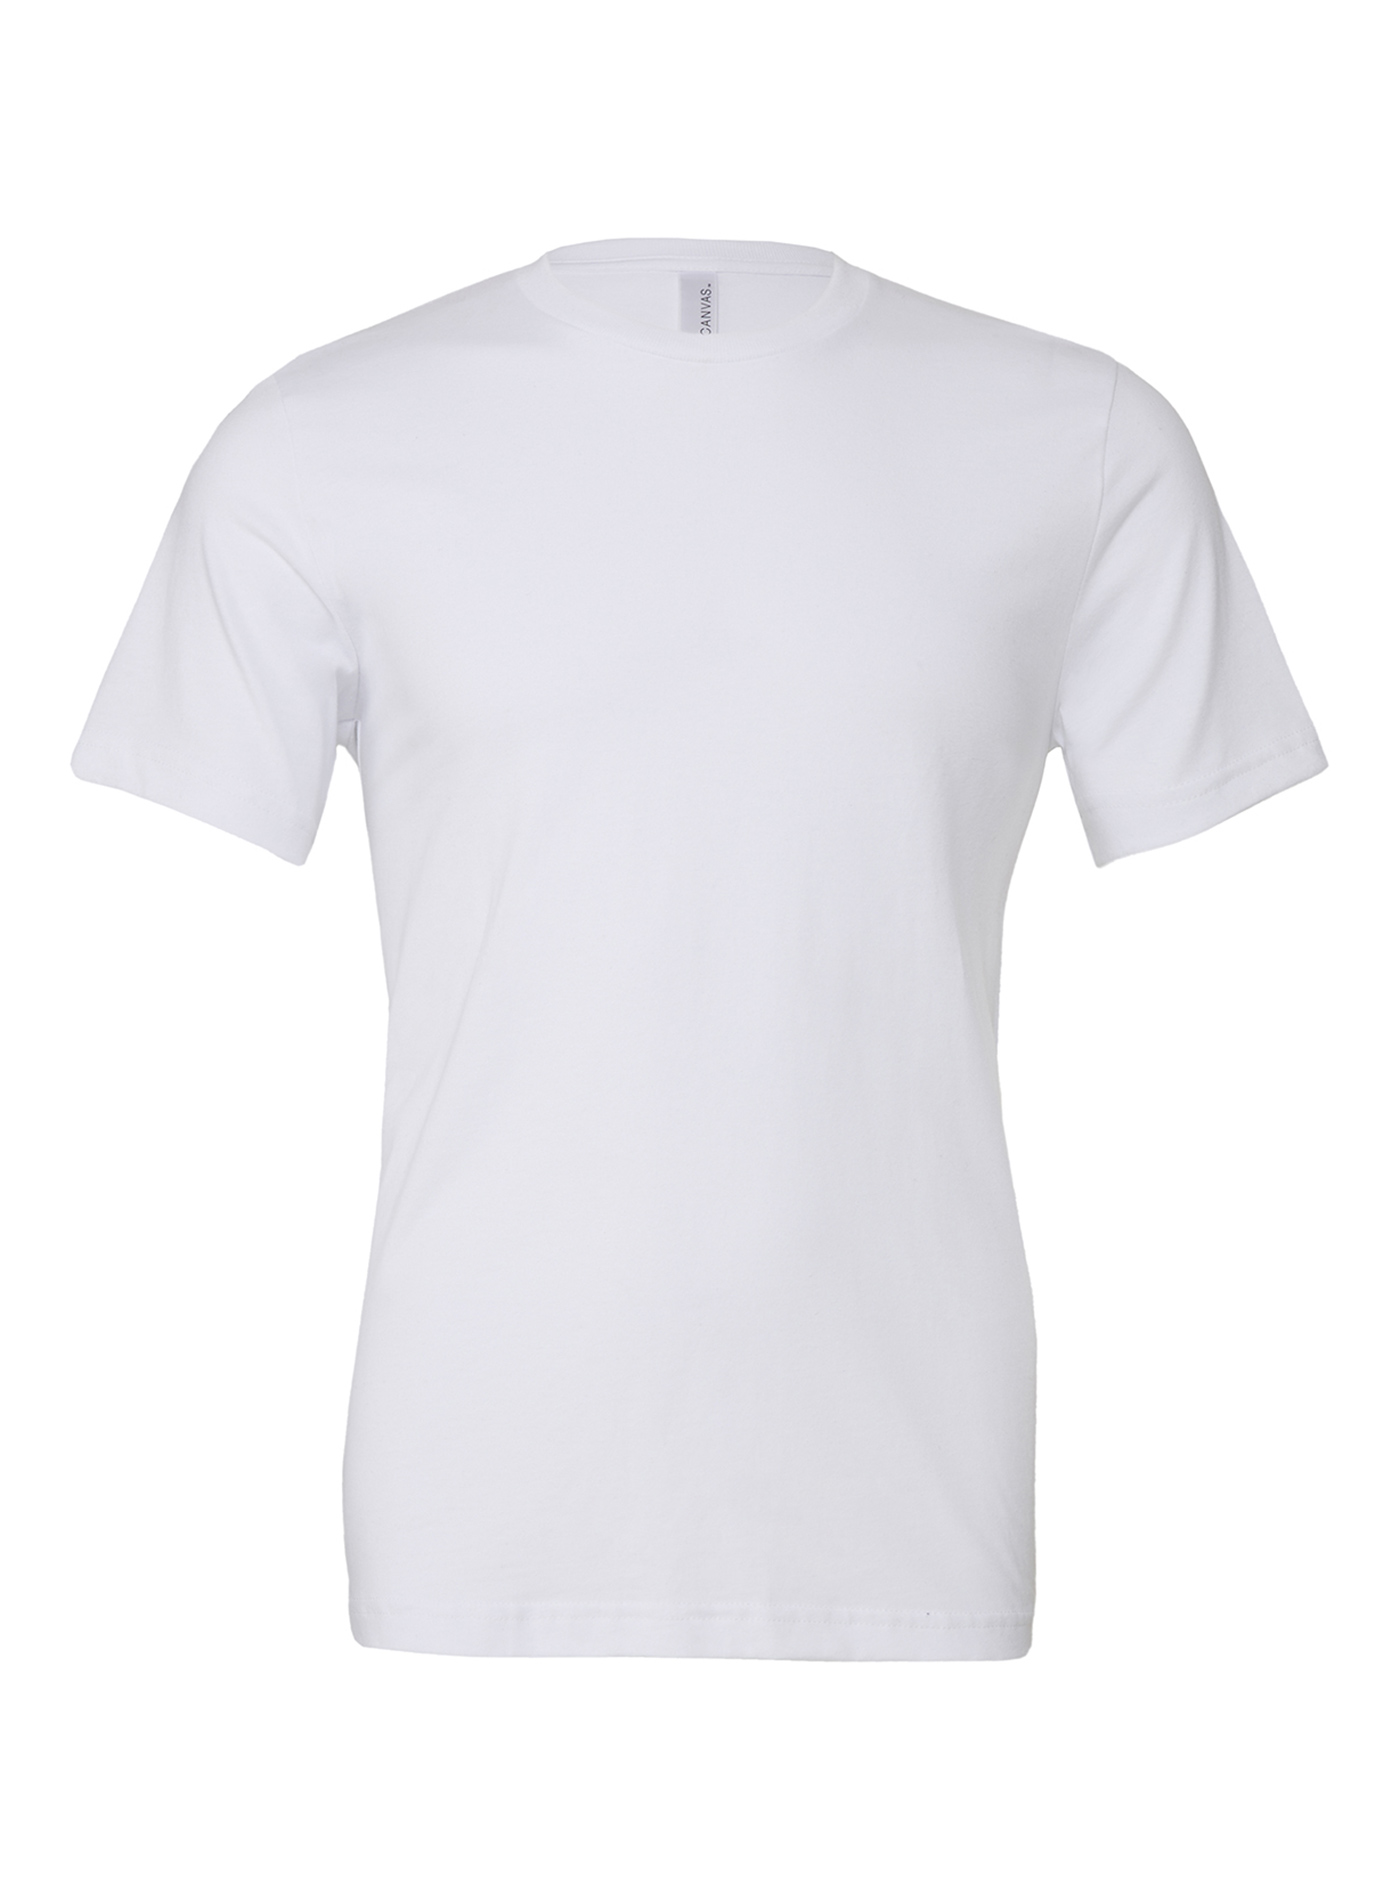 Unisex tričko Bella + Canvas Jersey - Bílá XXL